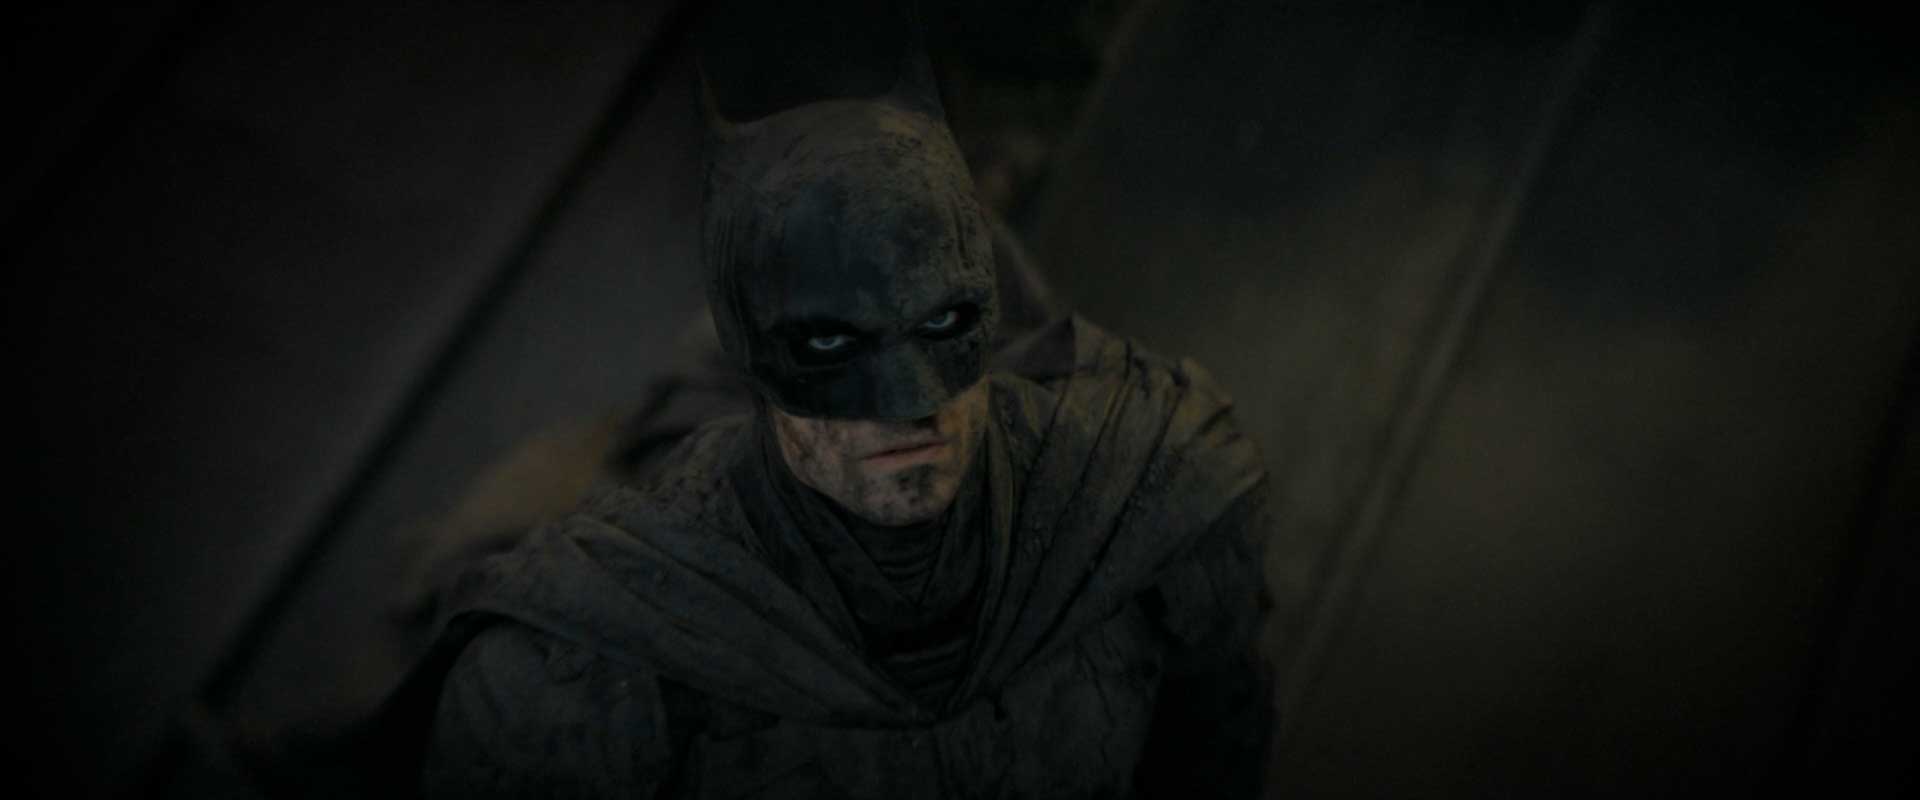 بتمن با صورت آلوده در فیلم The Batman، محصول سال ۲۰۲۲ میلادی